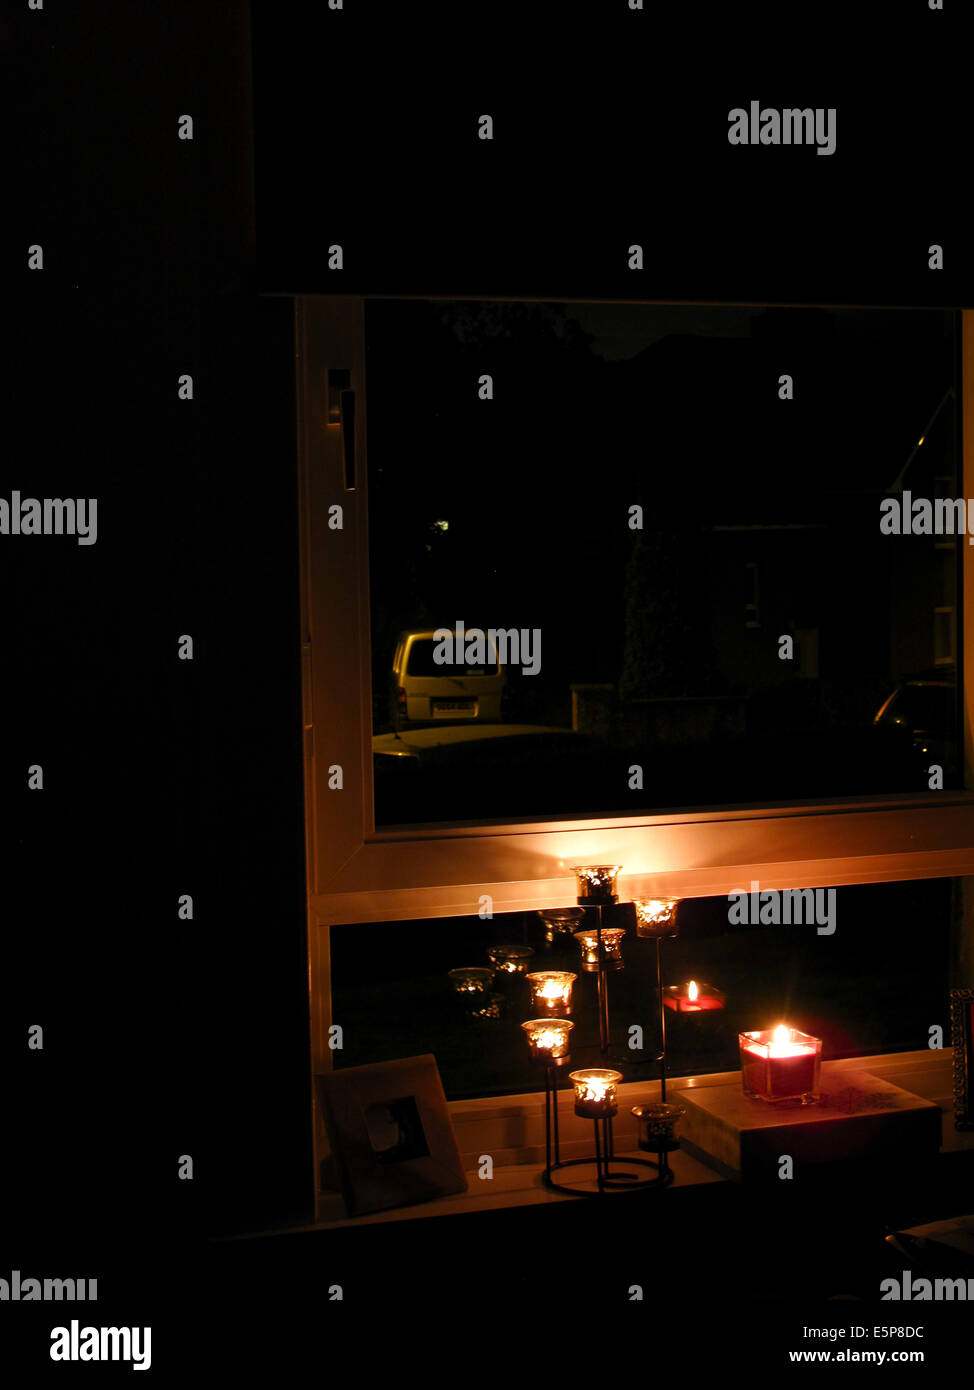 Glasgow Ecosse 4 août 2014. Des bougies allumées dans la fenêtre de la chambre dans le cadre de la commémoration de 100 ans depuis le début de la PREMIÈRE GUERRE MONDIALE. Maisons dans l'obscurité au-delà de la rue. Banque D'Images